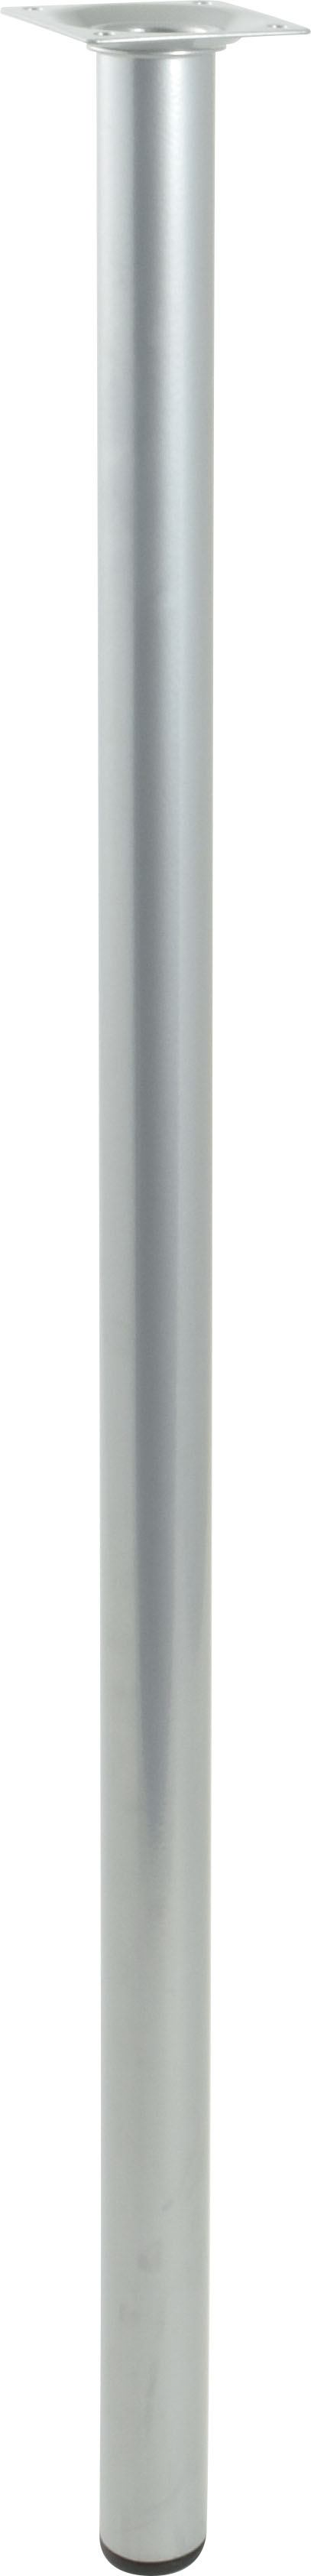 Pied cylindrique métal gris H.700 Ø30 mm - EVOLUDIS